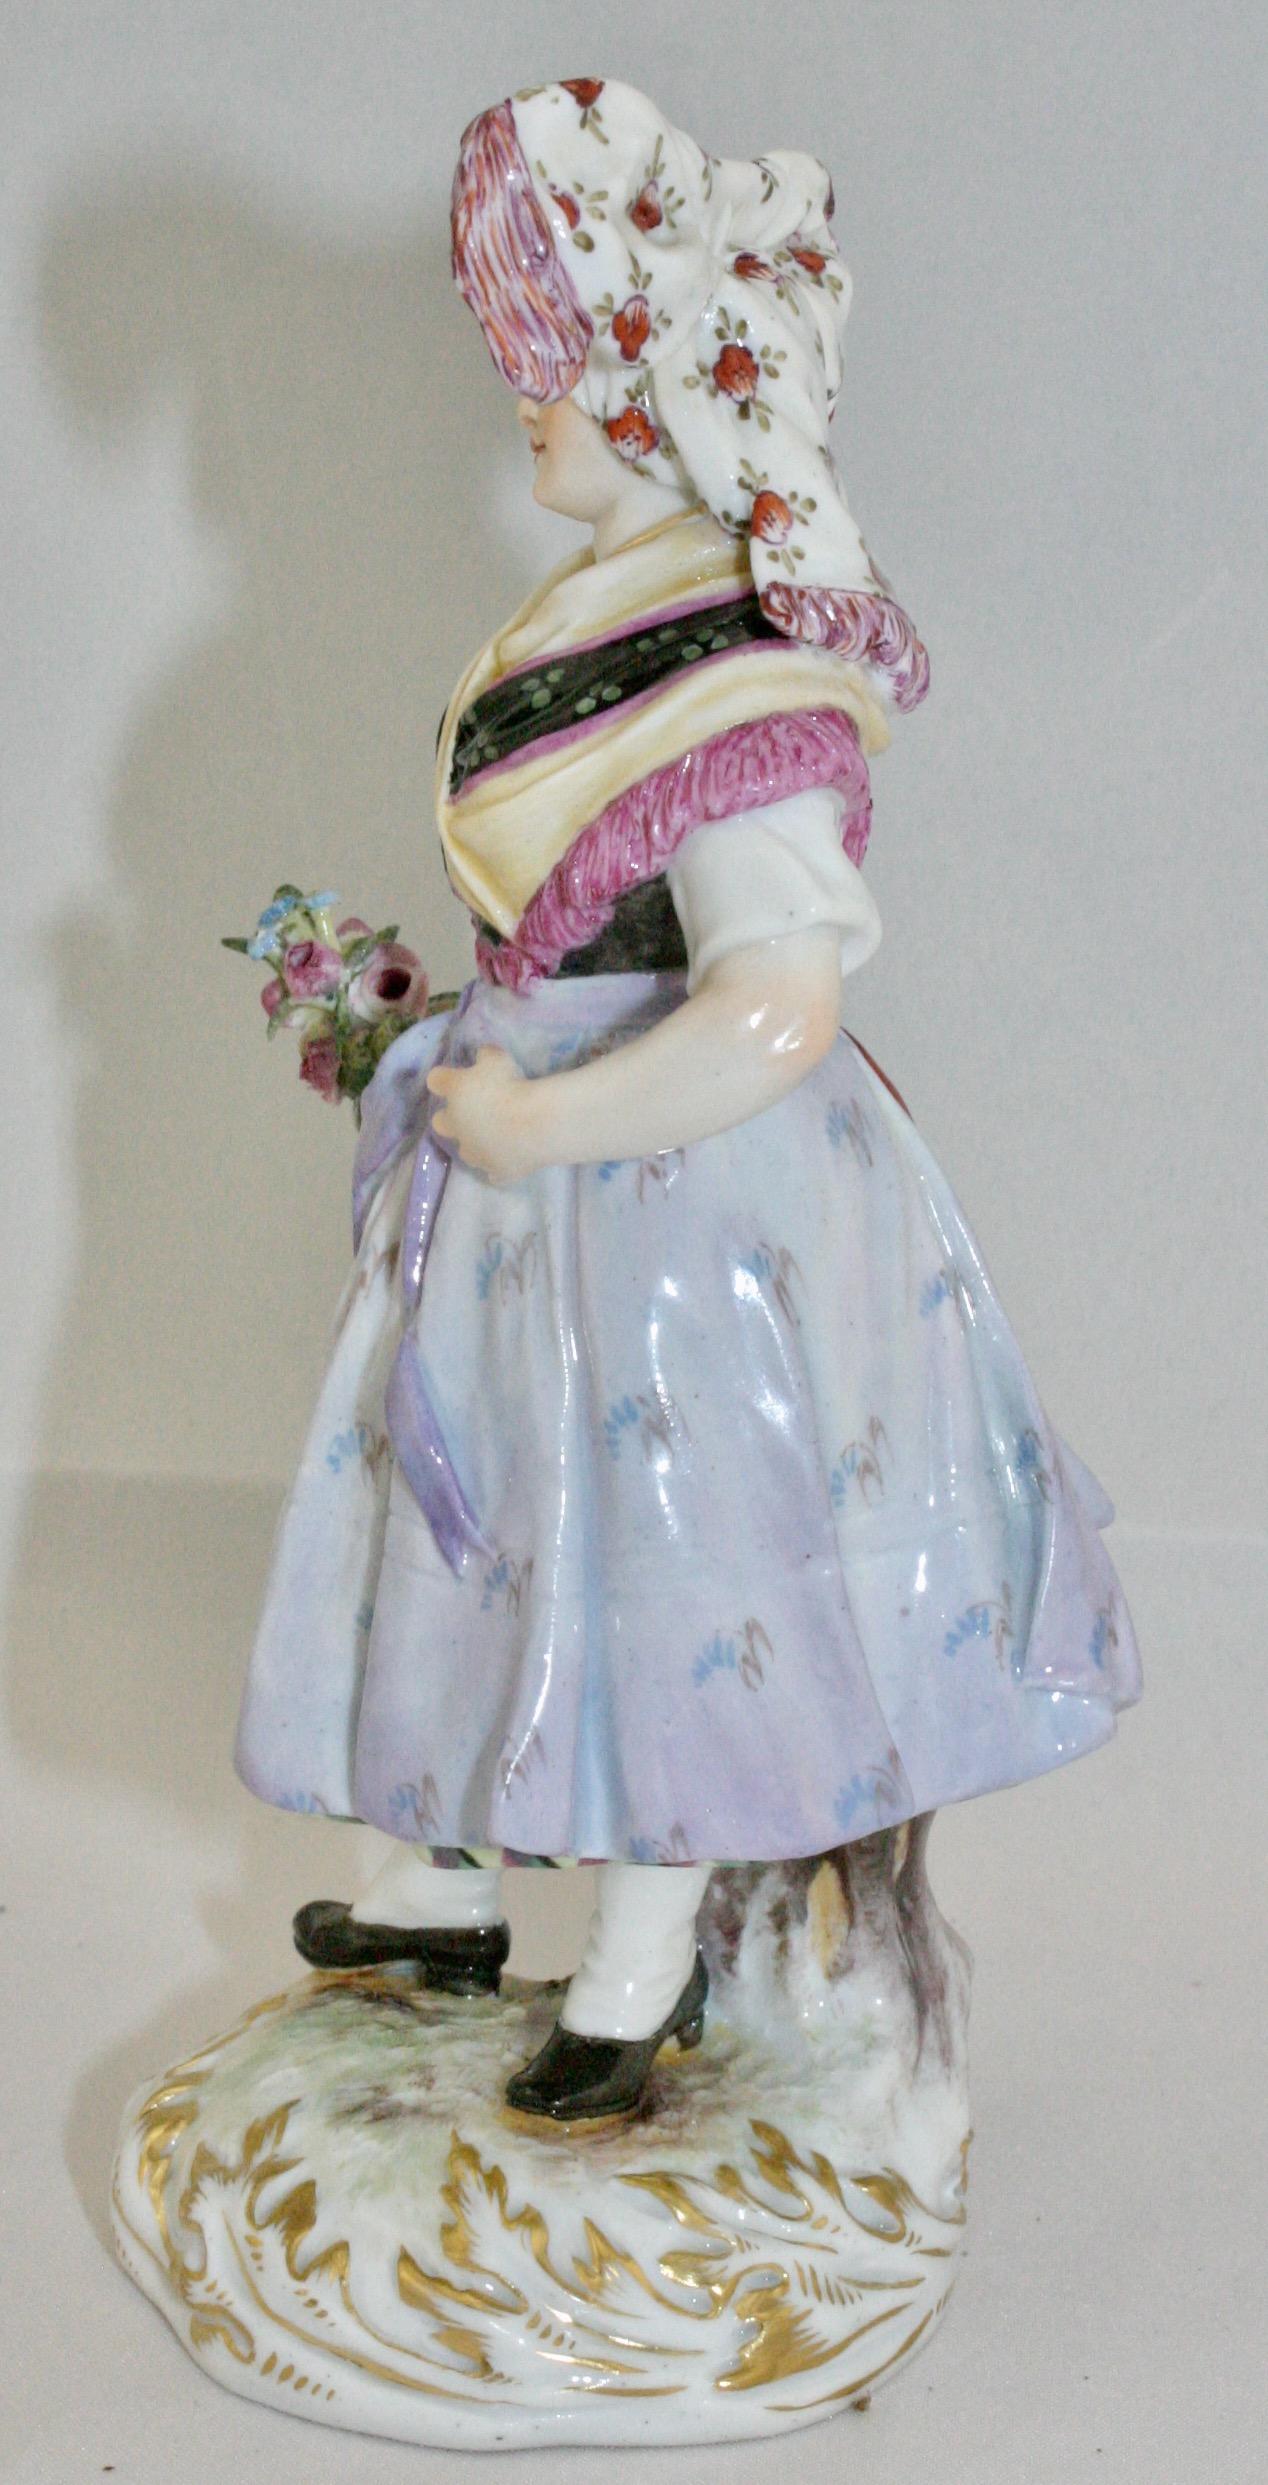 Figurine de Meissen représentant une femme lusacienne tenant des fleurs en costume national, vers 1887. Ce modèle a été conçu par Hugo Speiler. Il porte la marque Meissen, le numéro de modèle Q190d, 